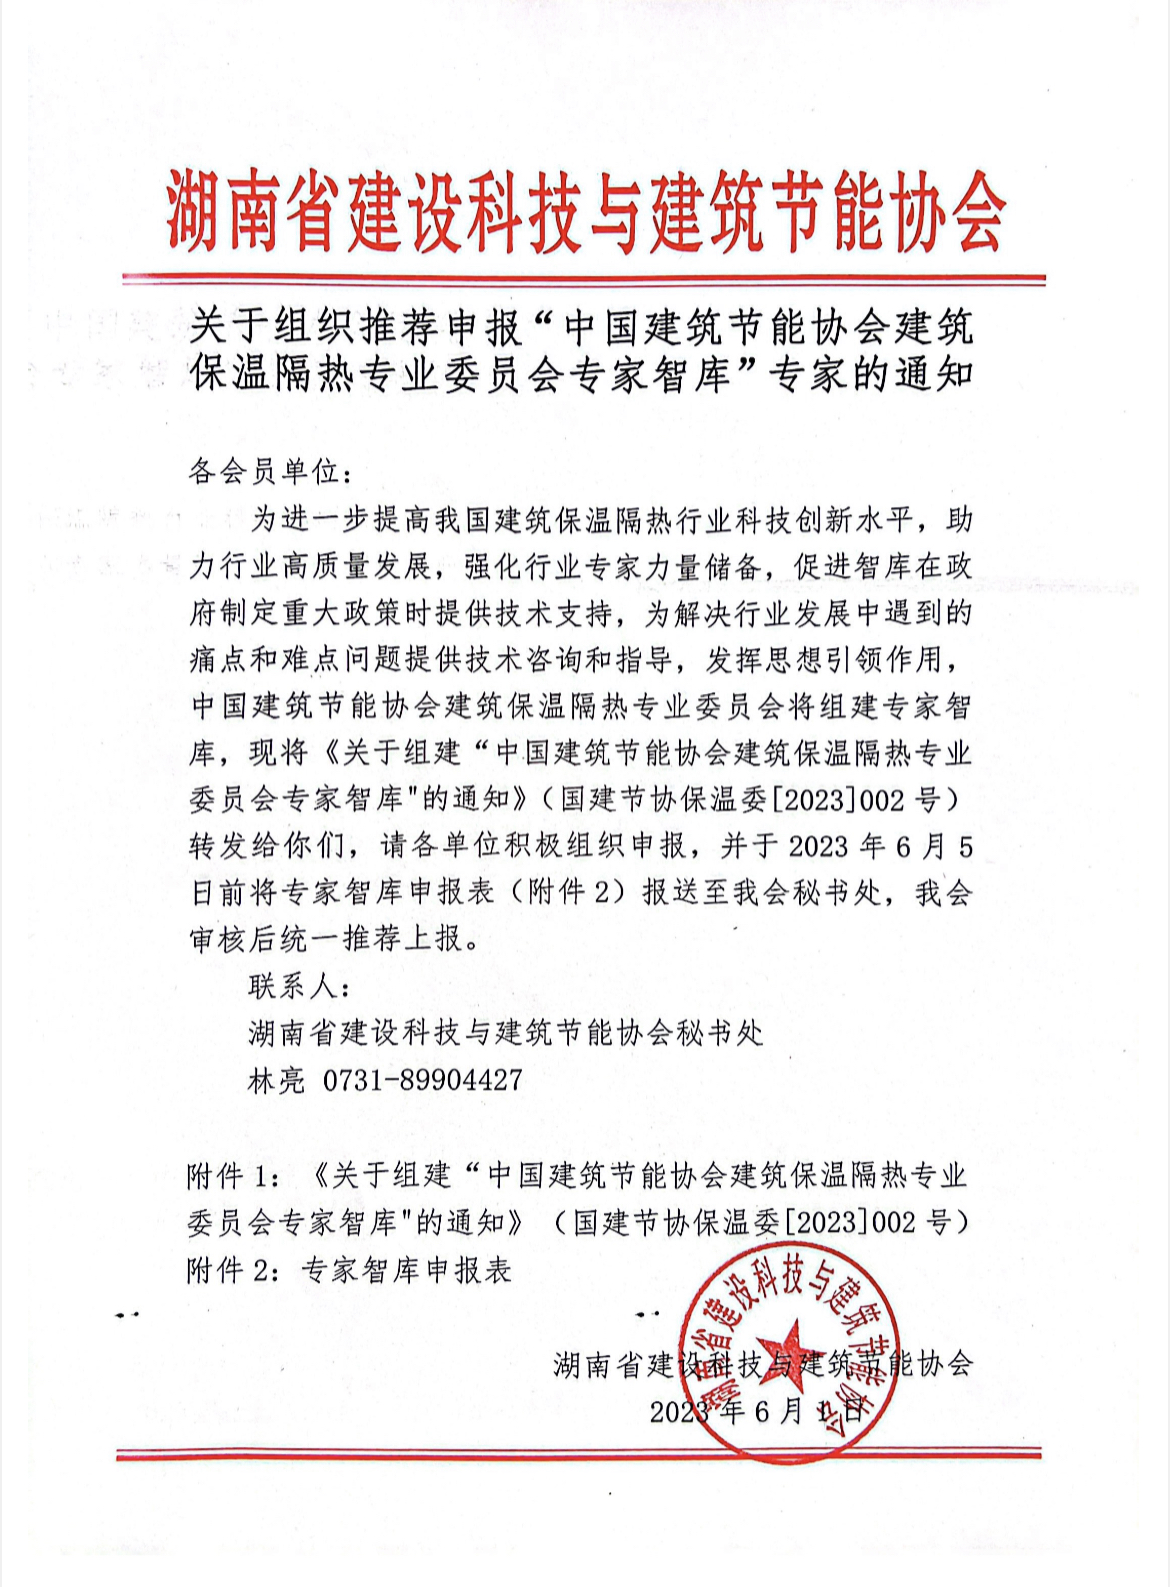 關于組織推薦申報“中國建筑節能協會建筑保溫隔熱專業委員會專家智庫”專家的通知